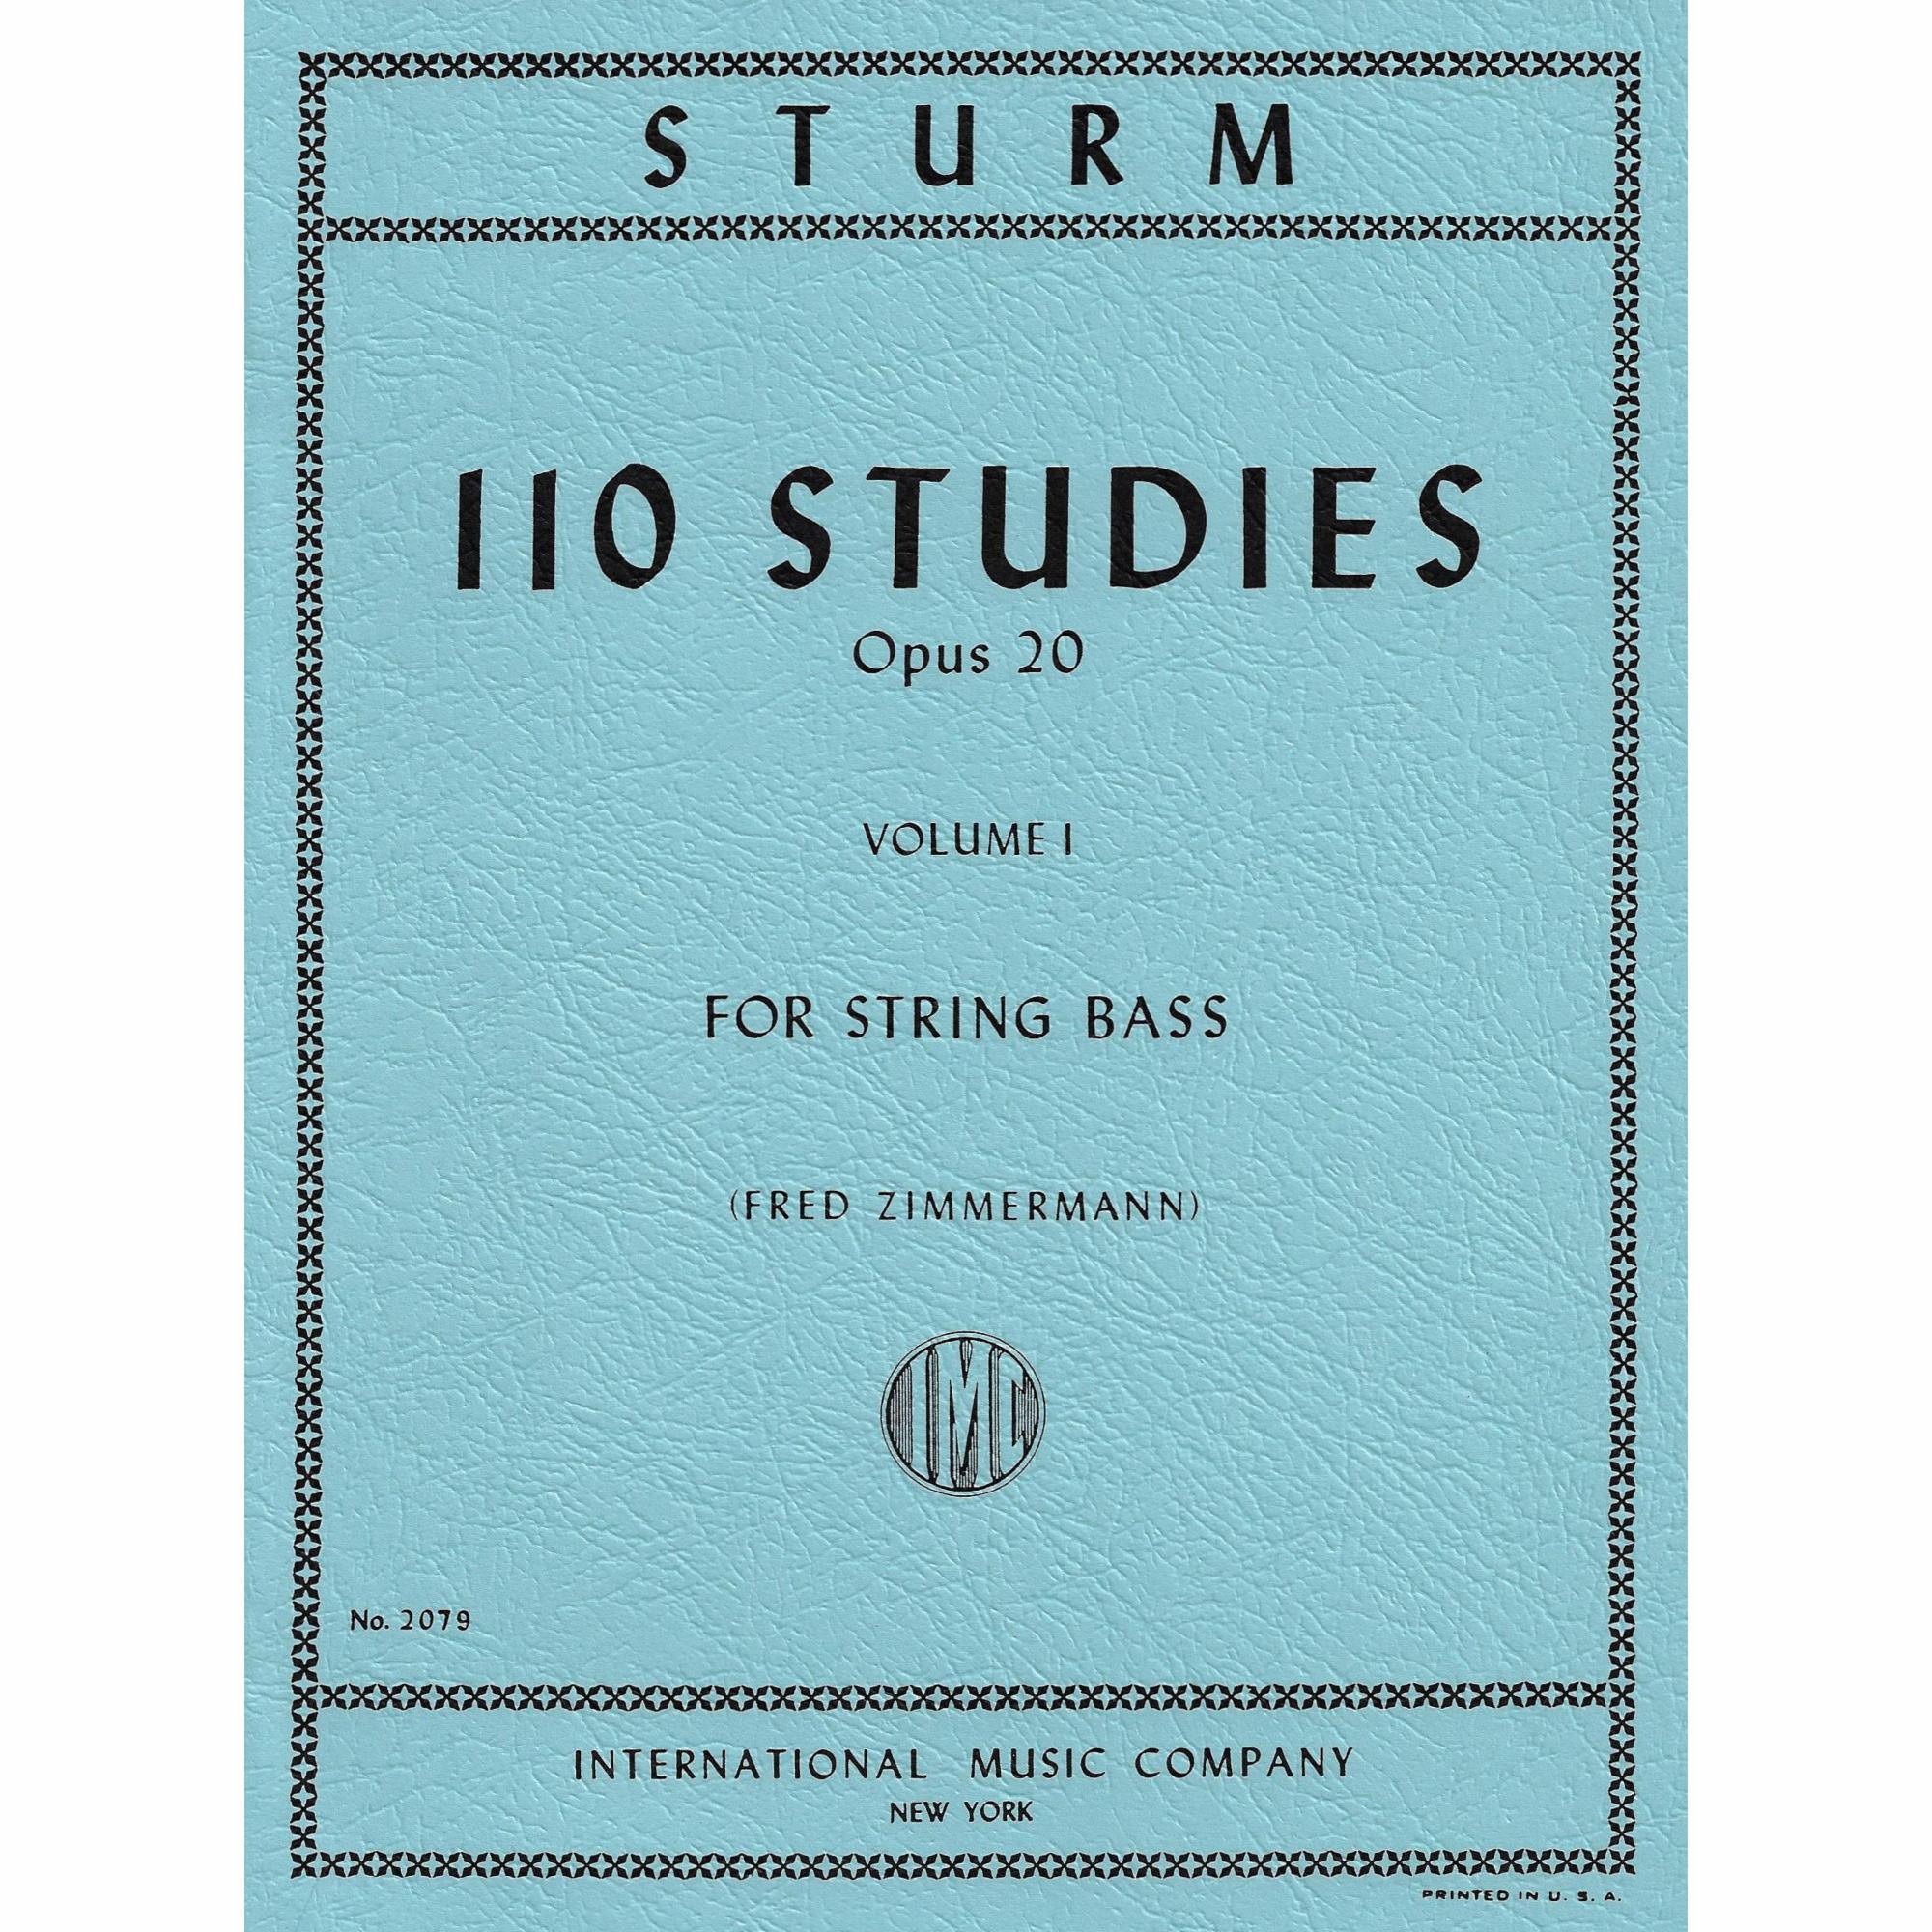 Sturm -- 110 Studies, Op. 20, Vols. I-II for Bass